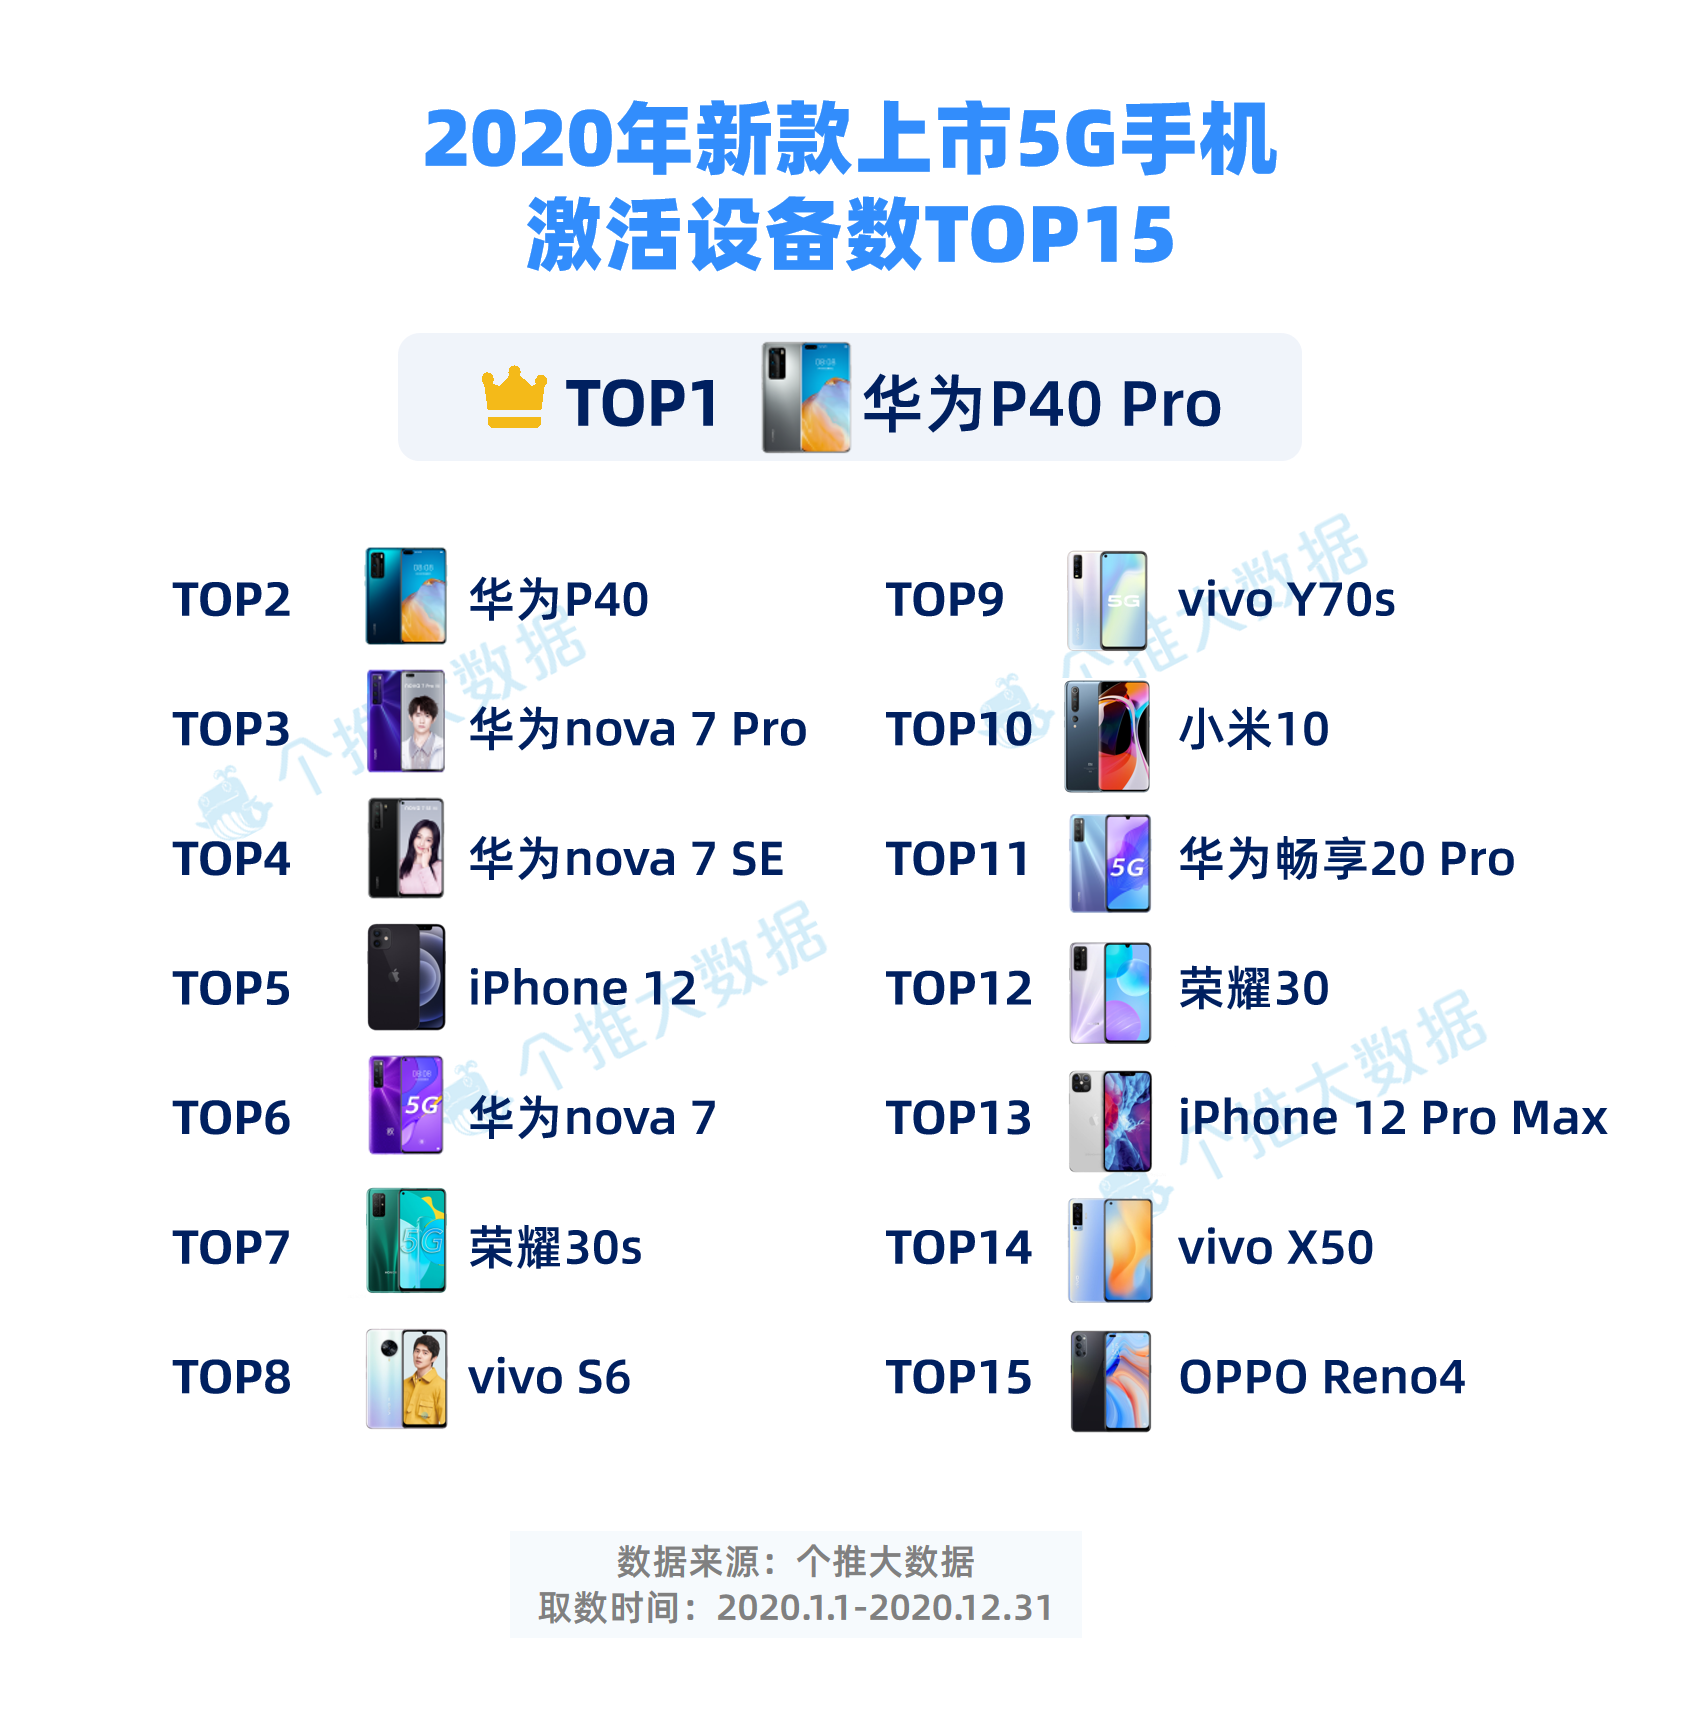 4-2020年新款上市5G手机激活设备数TOP15.png